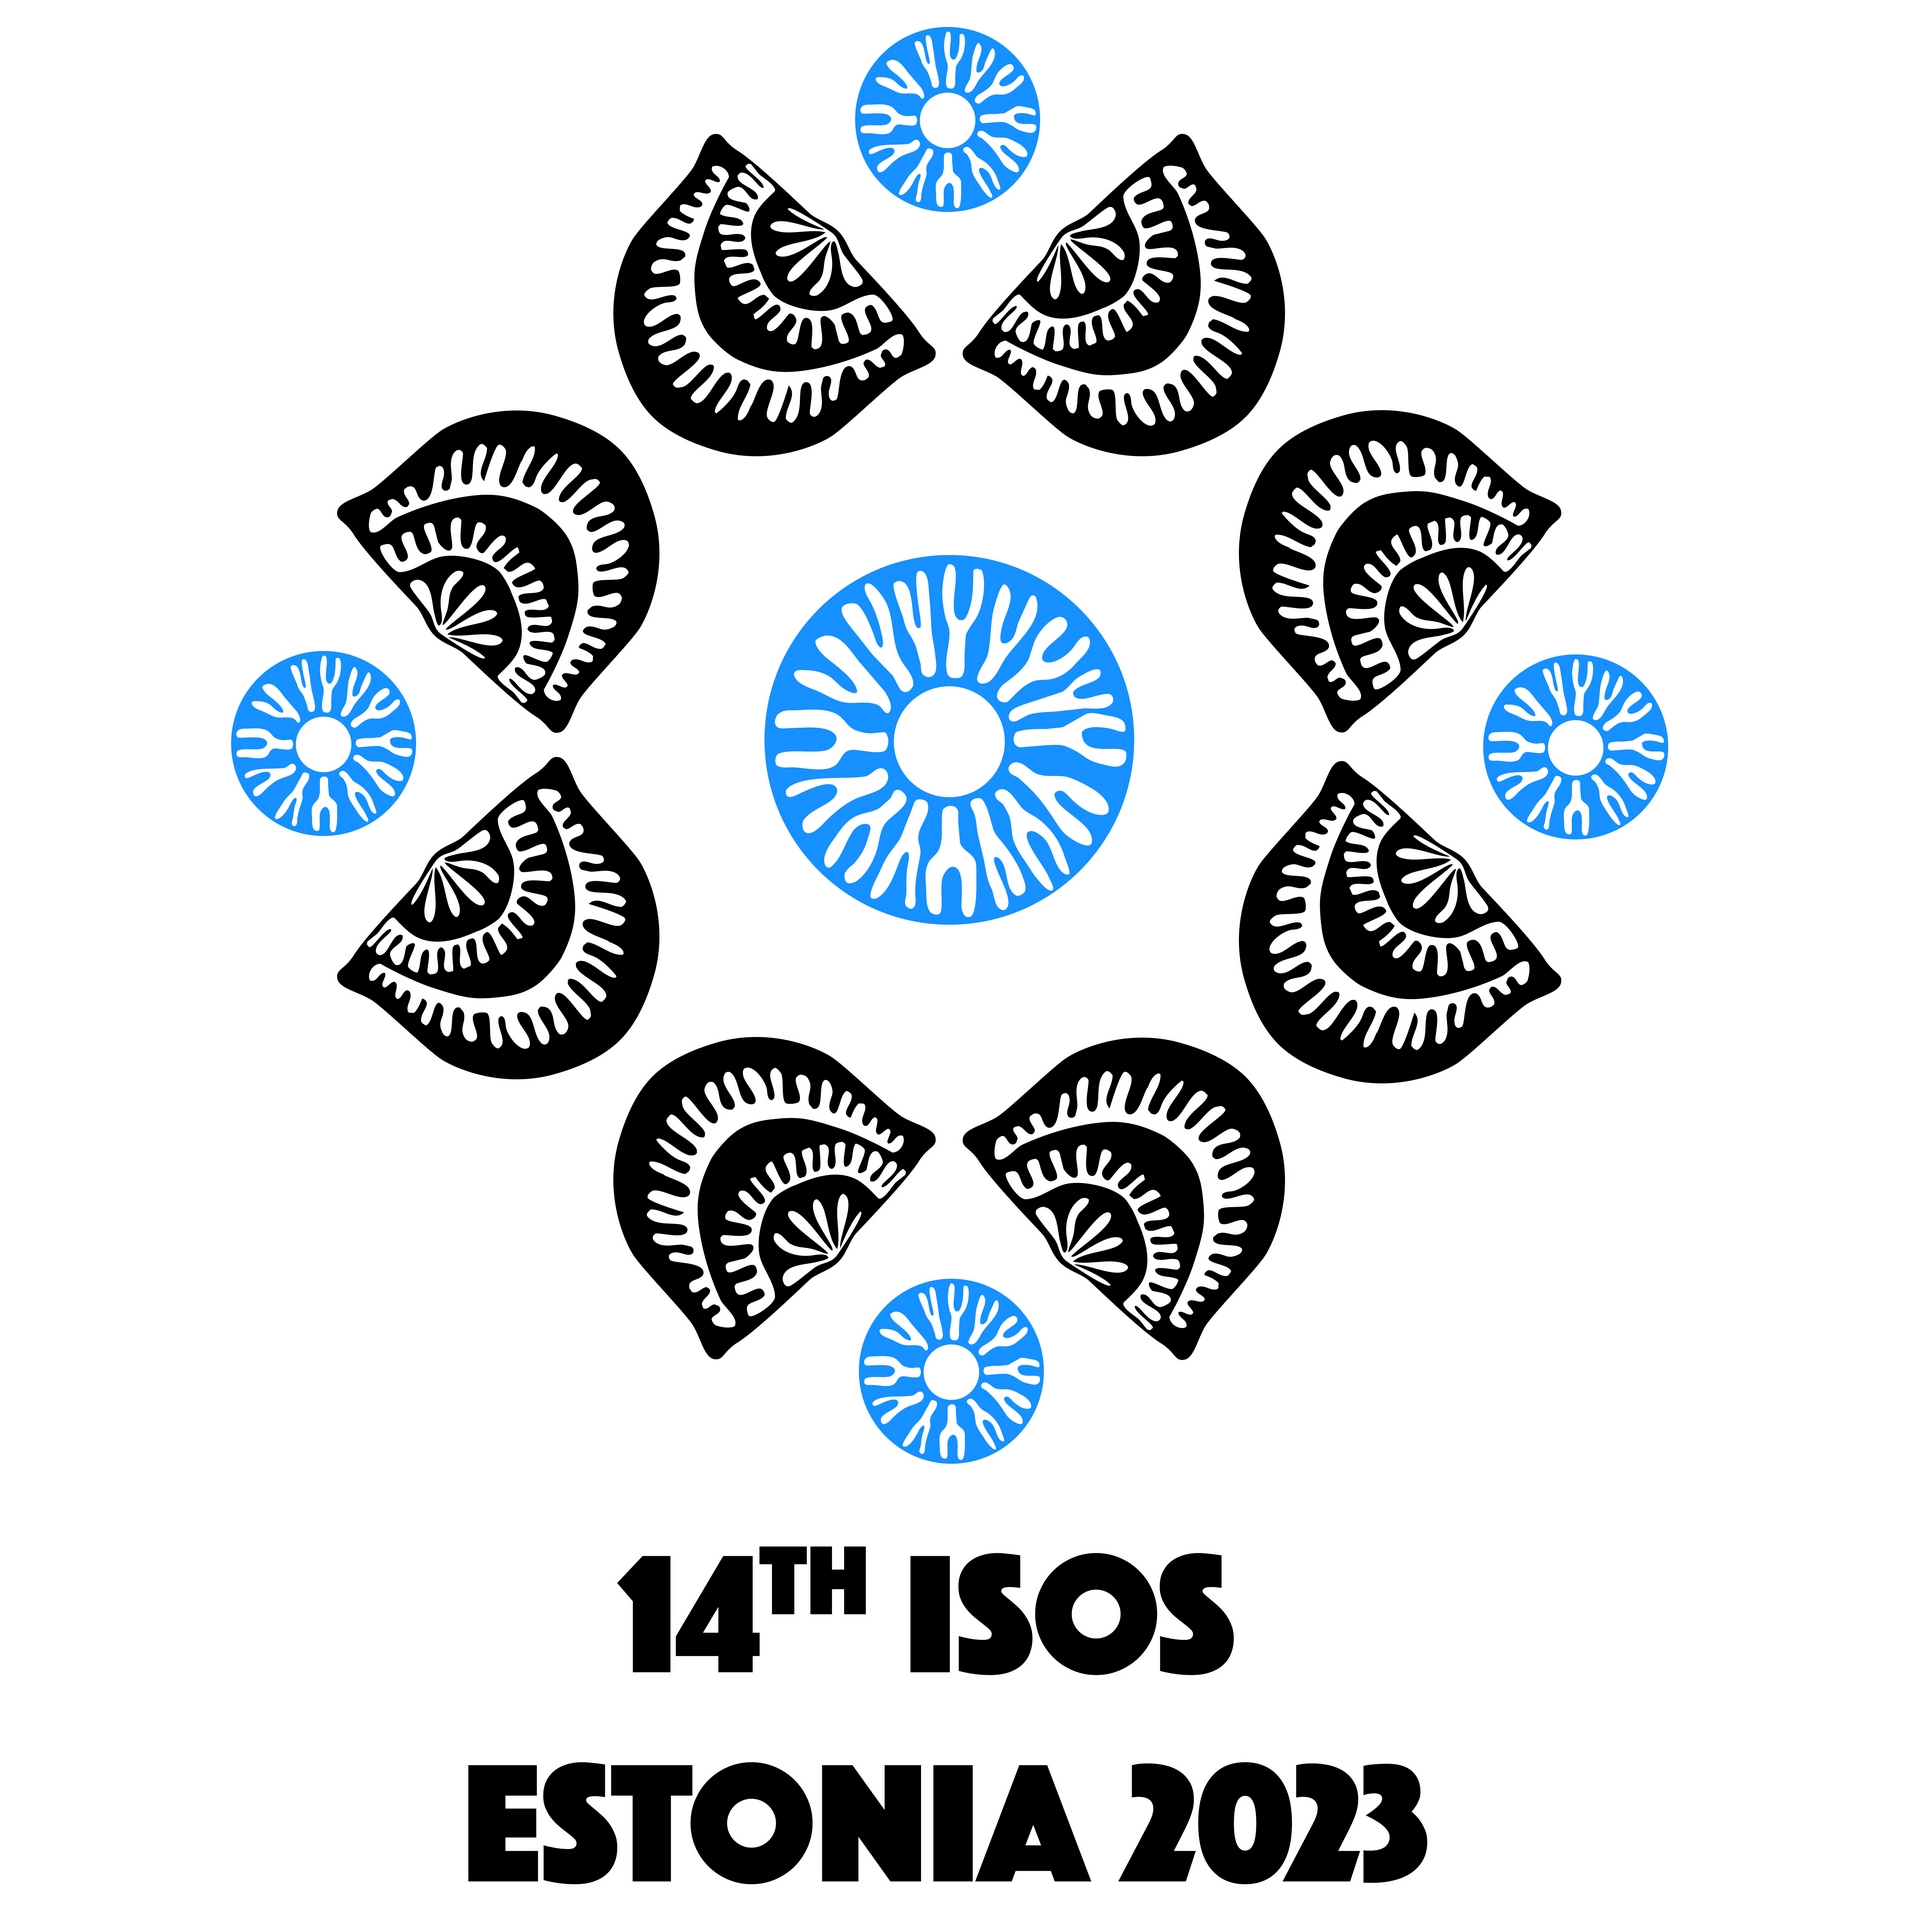 Järgmine rahvusvaheline ordoviitsiumi-uurijate teaduskonverents toimub sel suvel Eestis. https://isos14.org/